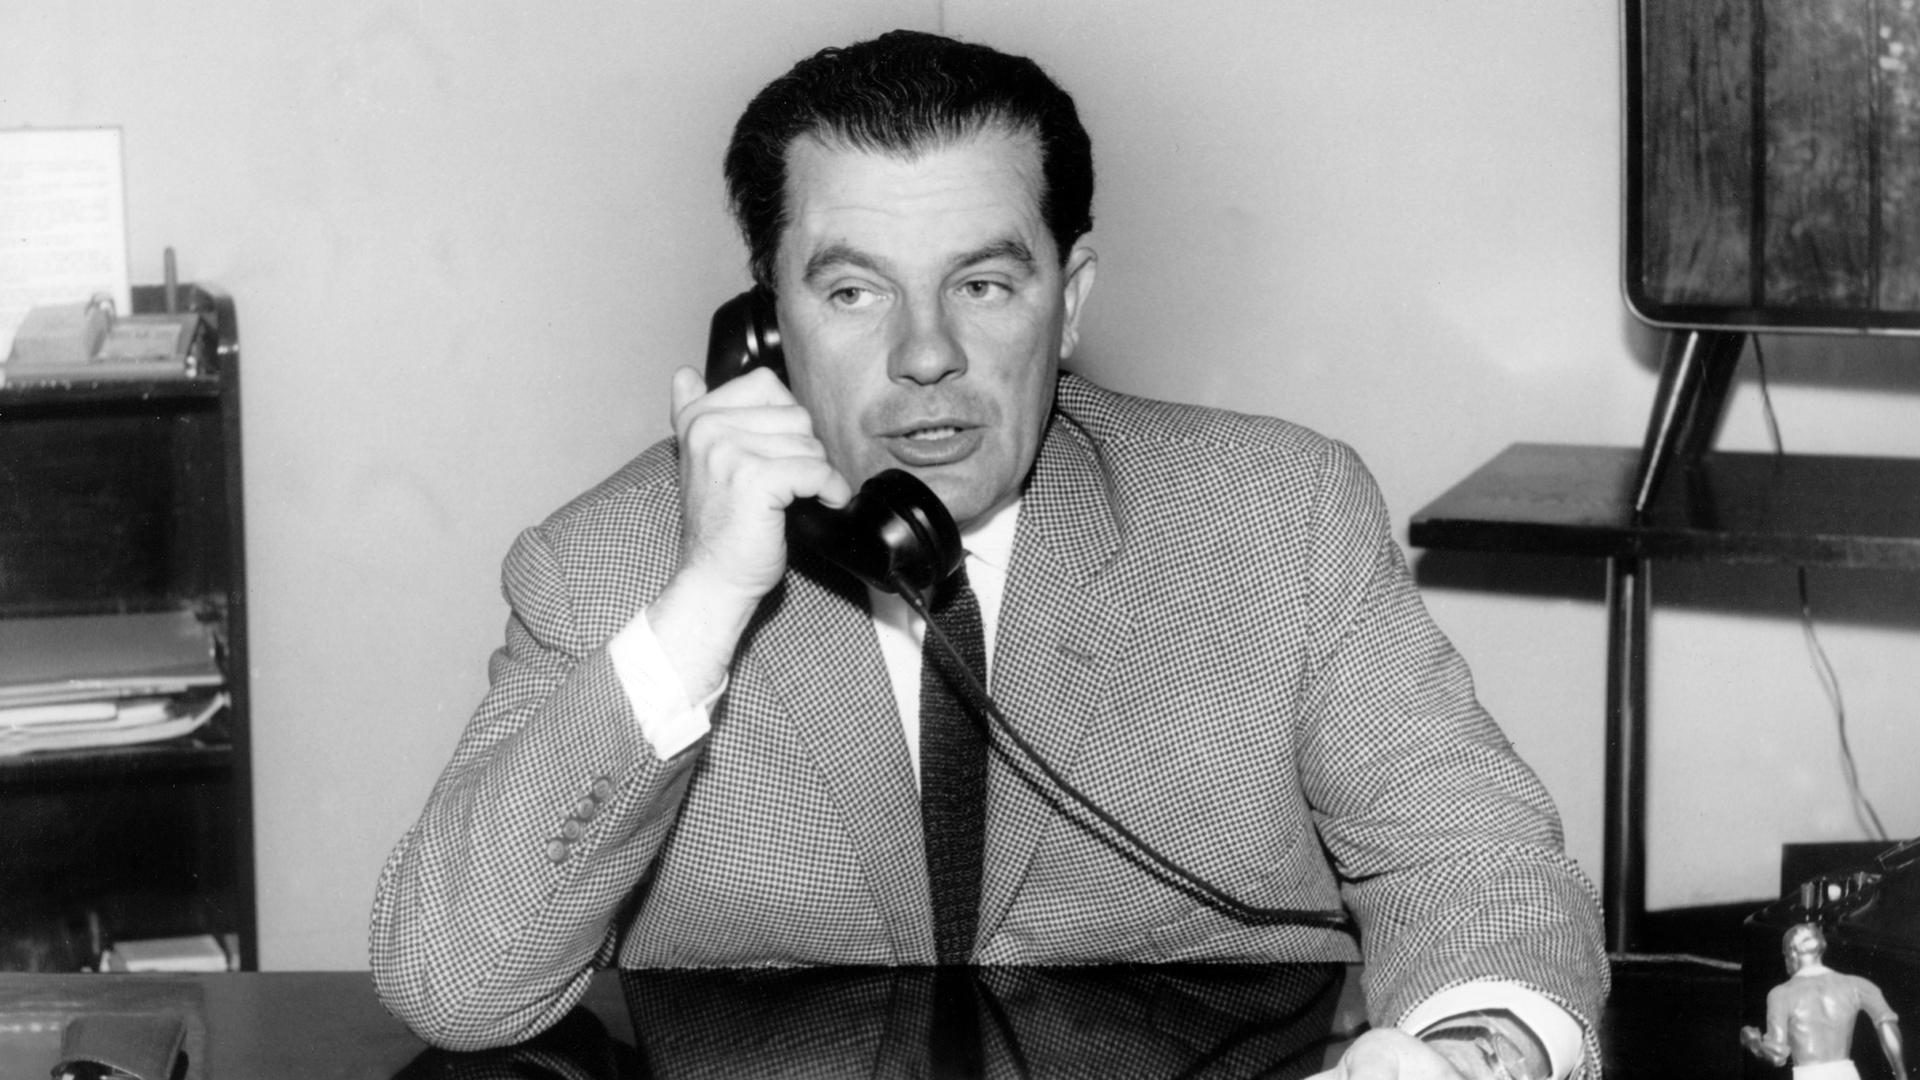 Der Sportreporter Herbert Zimmermann, Leiter der Abteilung Sport beim Norddeutschen Rundfunk, telefoniert an seinem Schreibtisch im Funkhaus (undatierte Aufnahme).